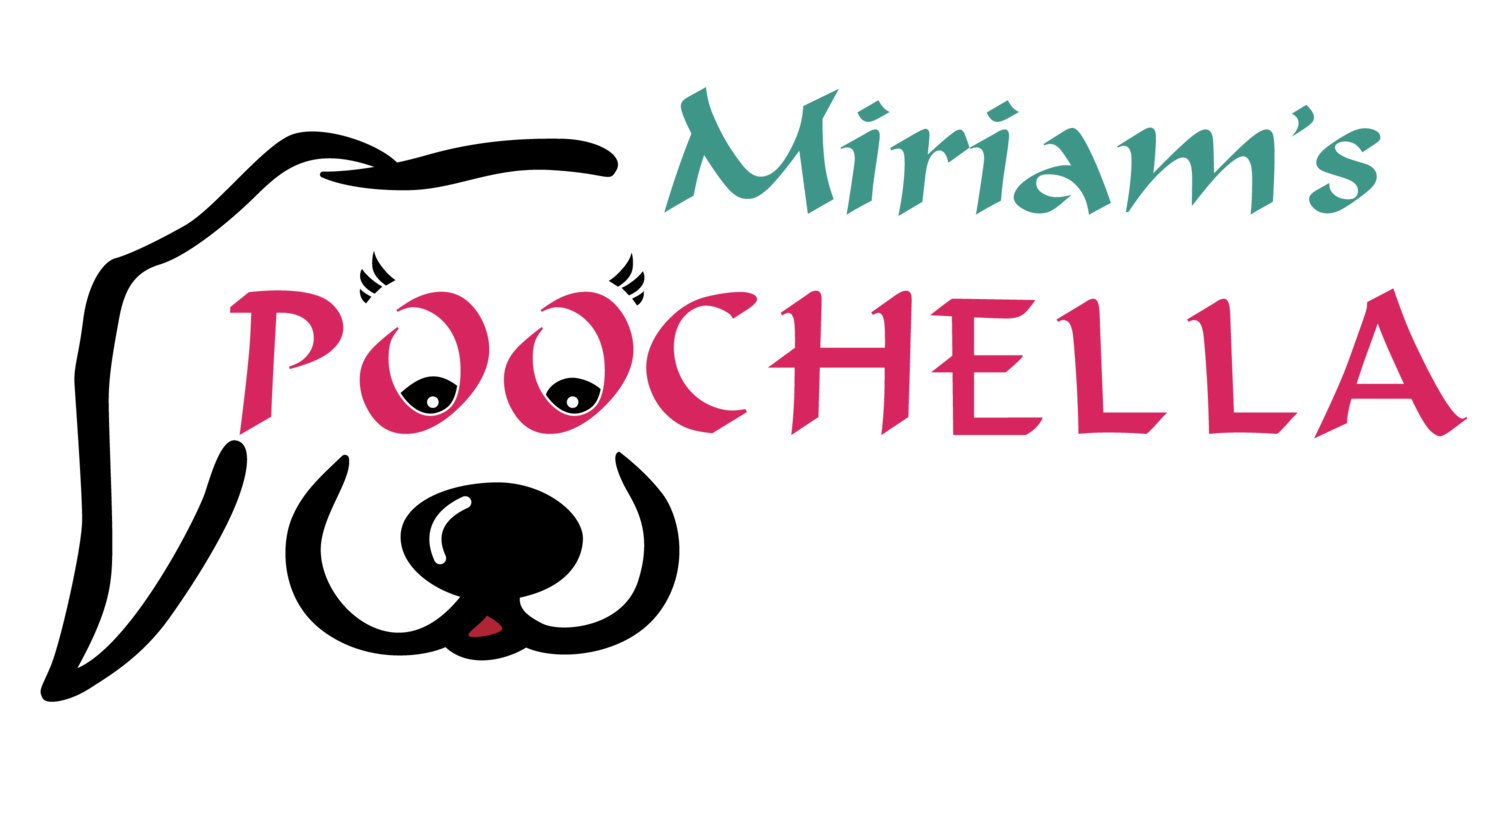 Miriams Poochella